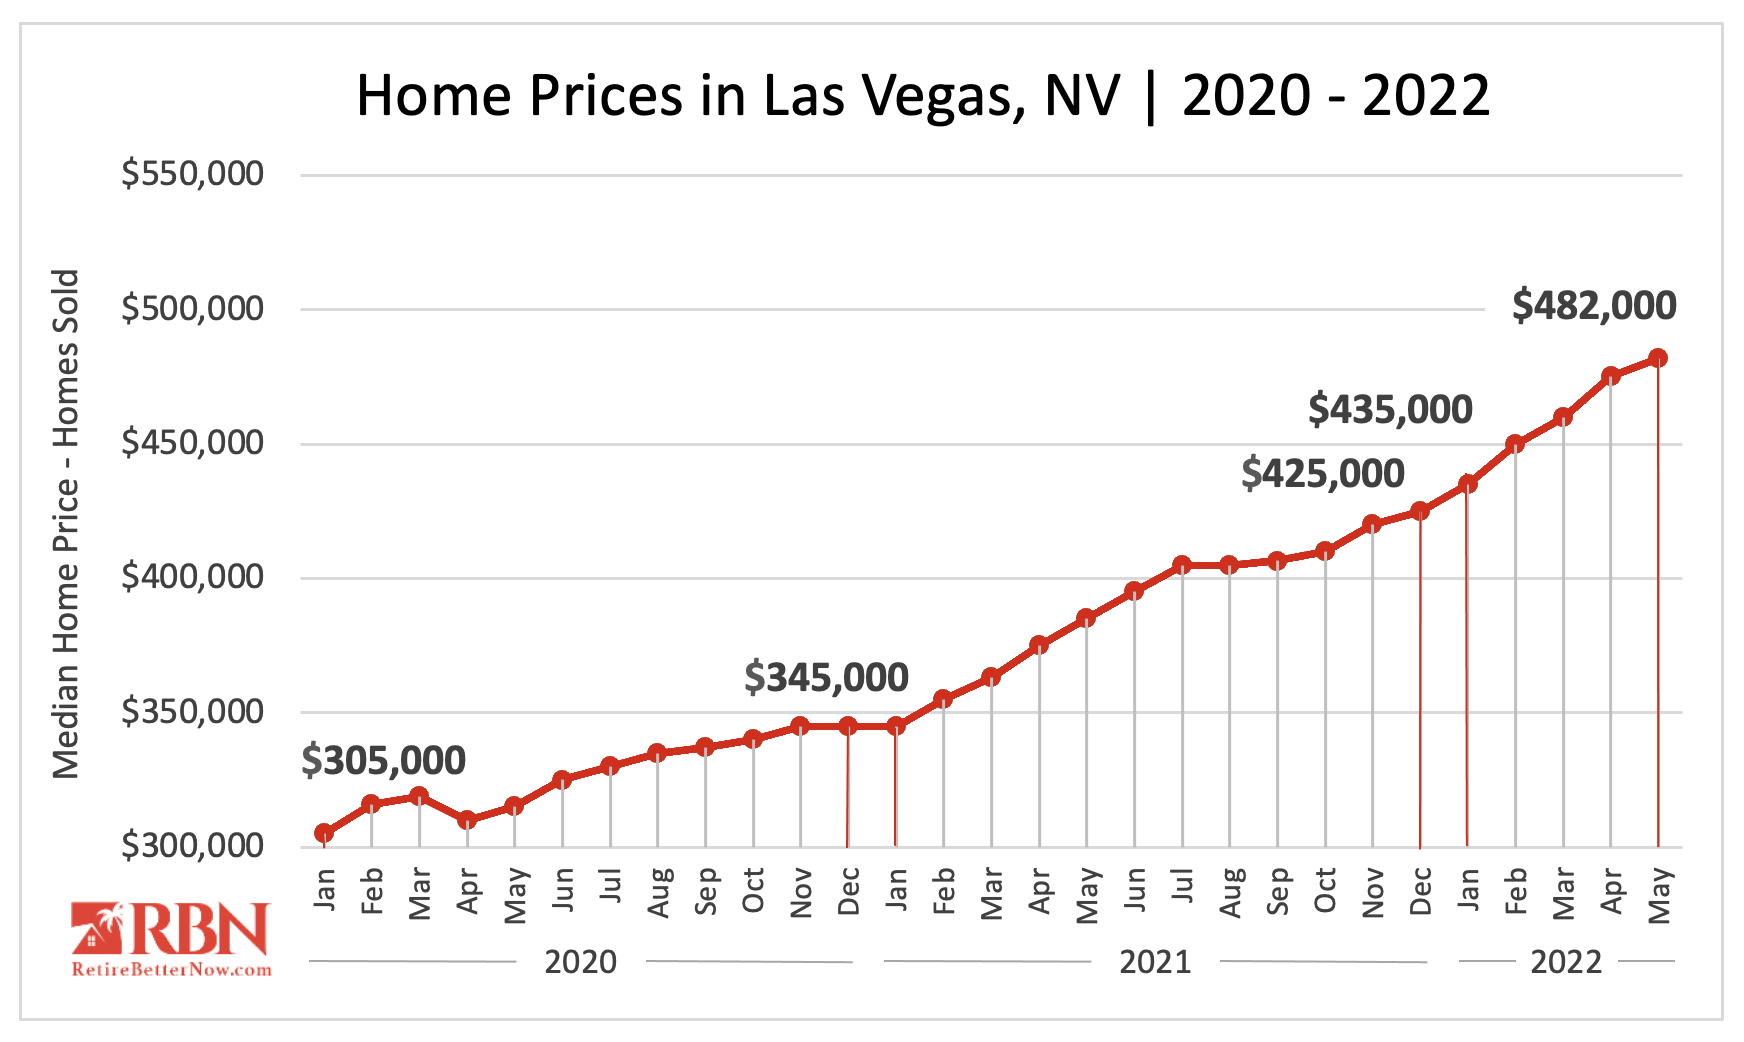 Median Home Price in Las Vegas, NV 2020 - 2022